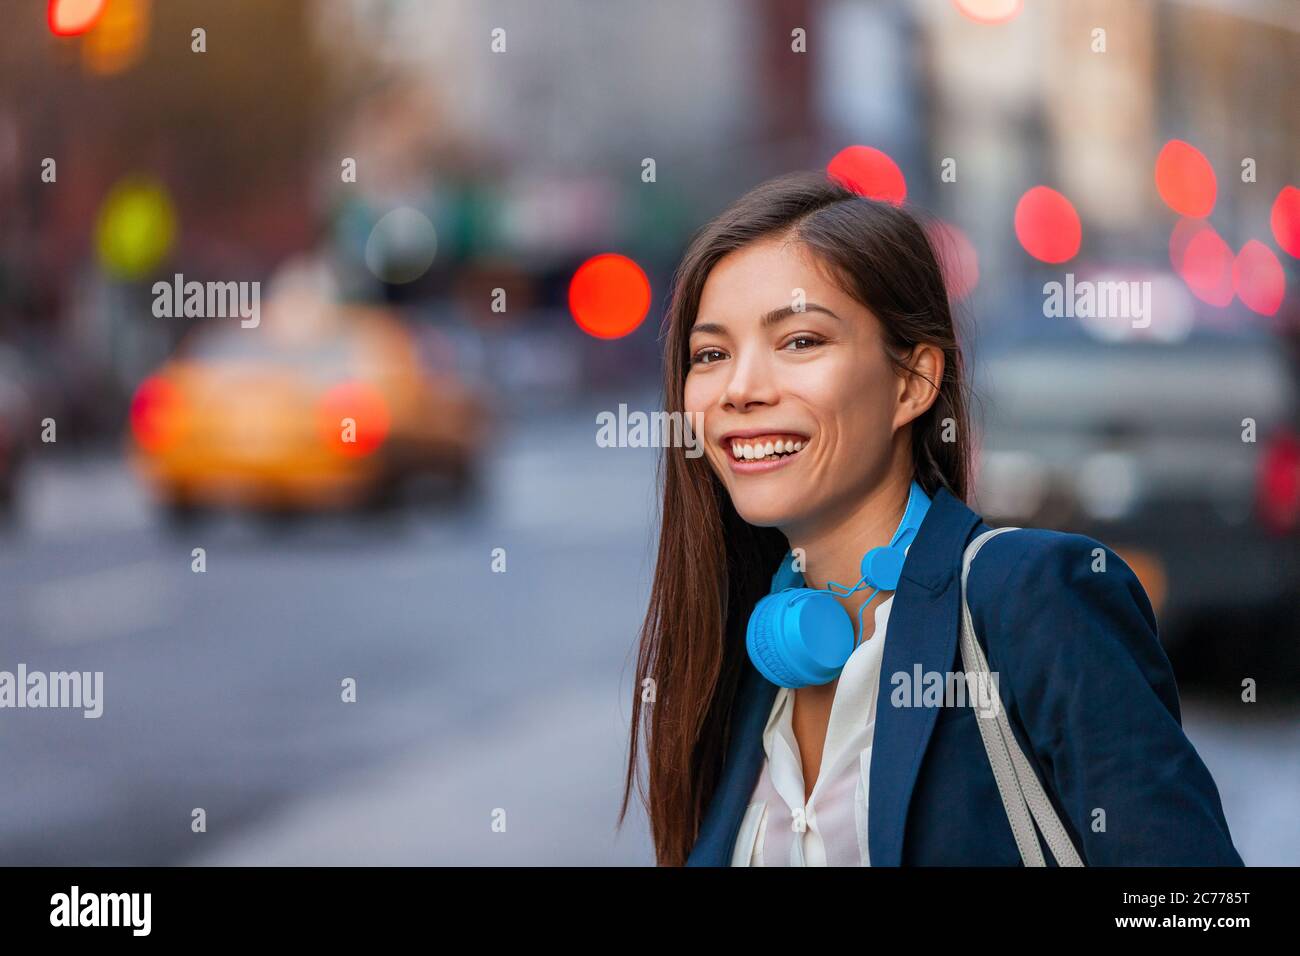 Jeune femme asiatique professionnelle à la hanche avec un casque d'appareil de technologie marchant dans New York New York Street se déplaçant après le travail de nuit. Joyeux sourire Banque D'Images